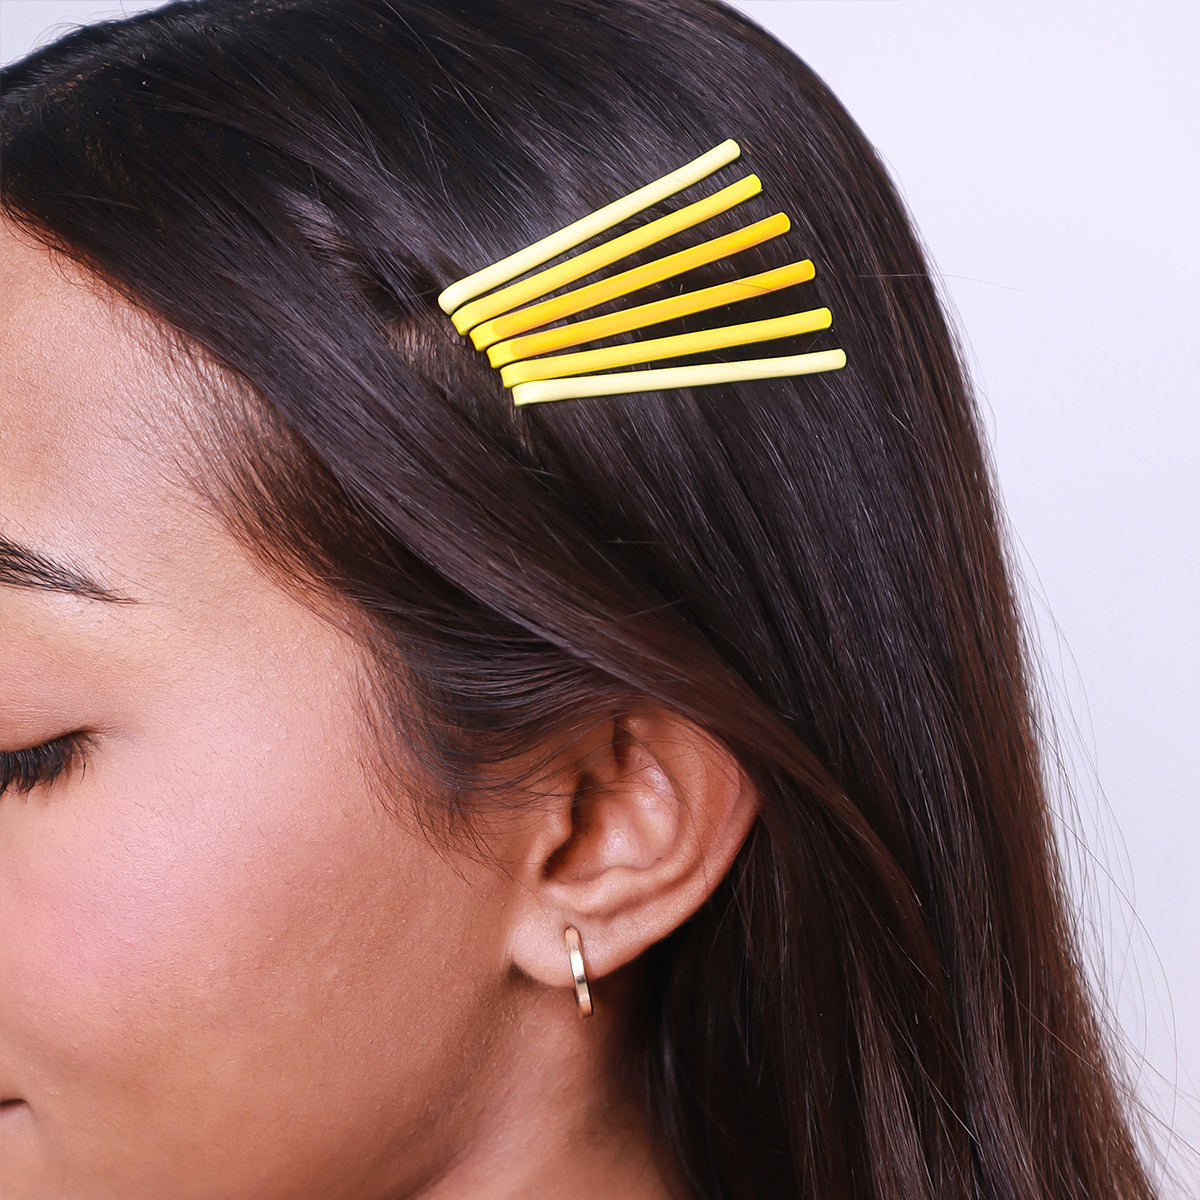 Shades Of Yellow Hair Pins